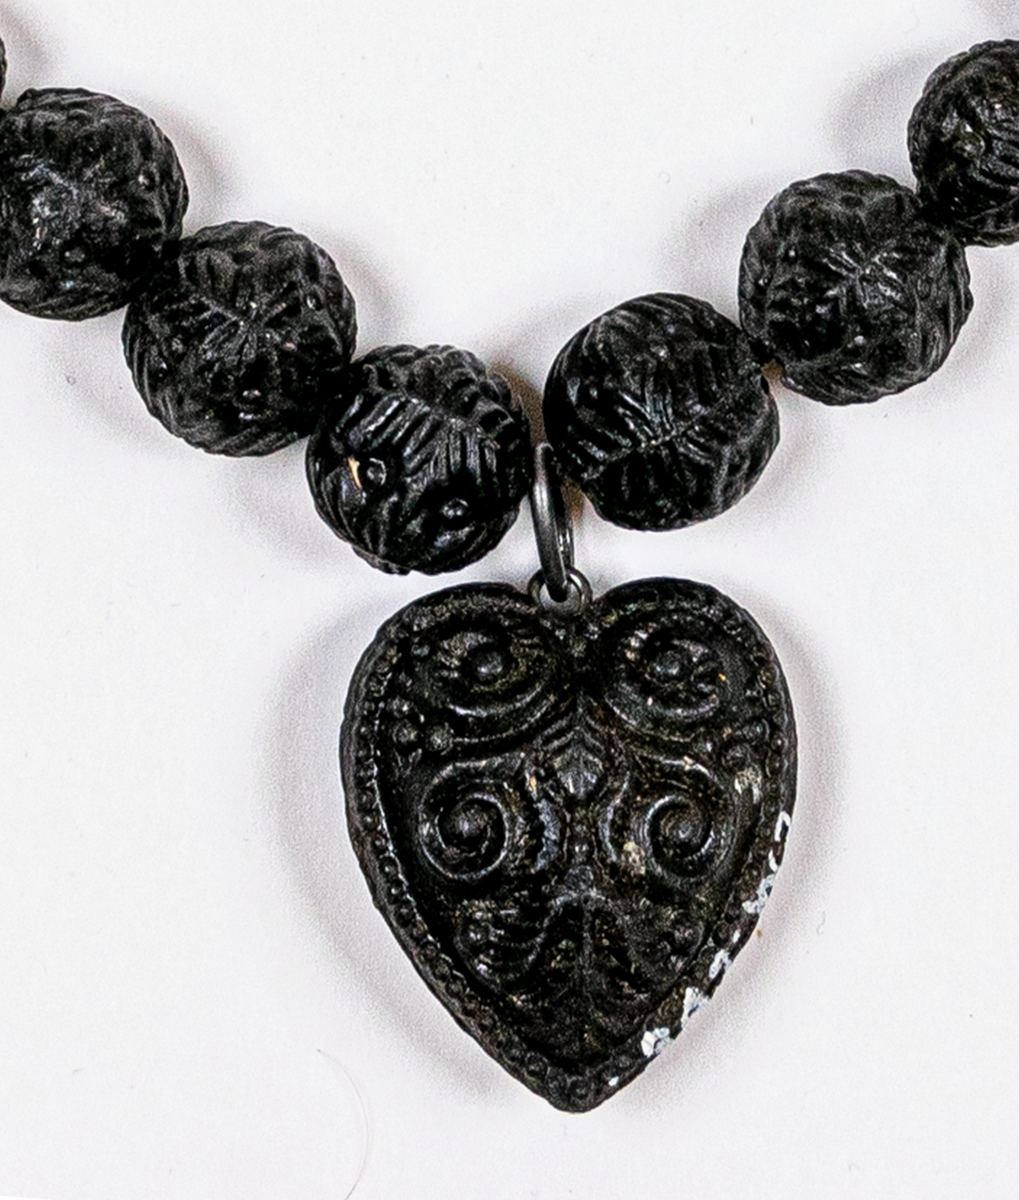 Halsband av svarta kulor, med ett hjärta som hänge. Stjärna och andra ornament pryder både hjärta och kulor. En del kulor saknas. Sannolikt gjuten konstmassa som guttaperka.